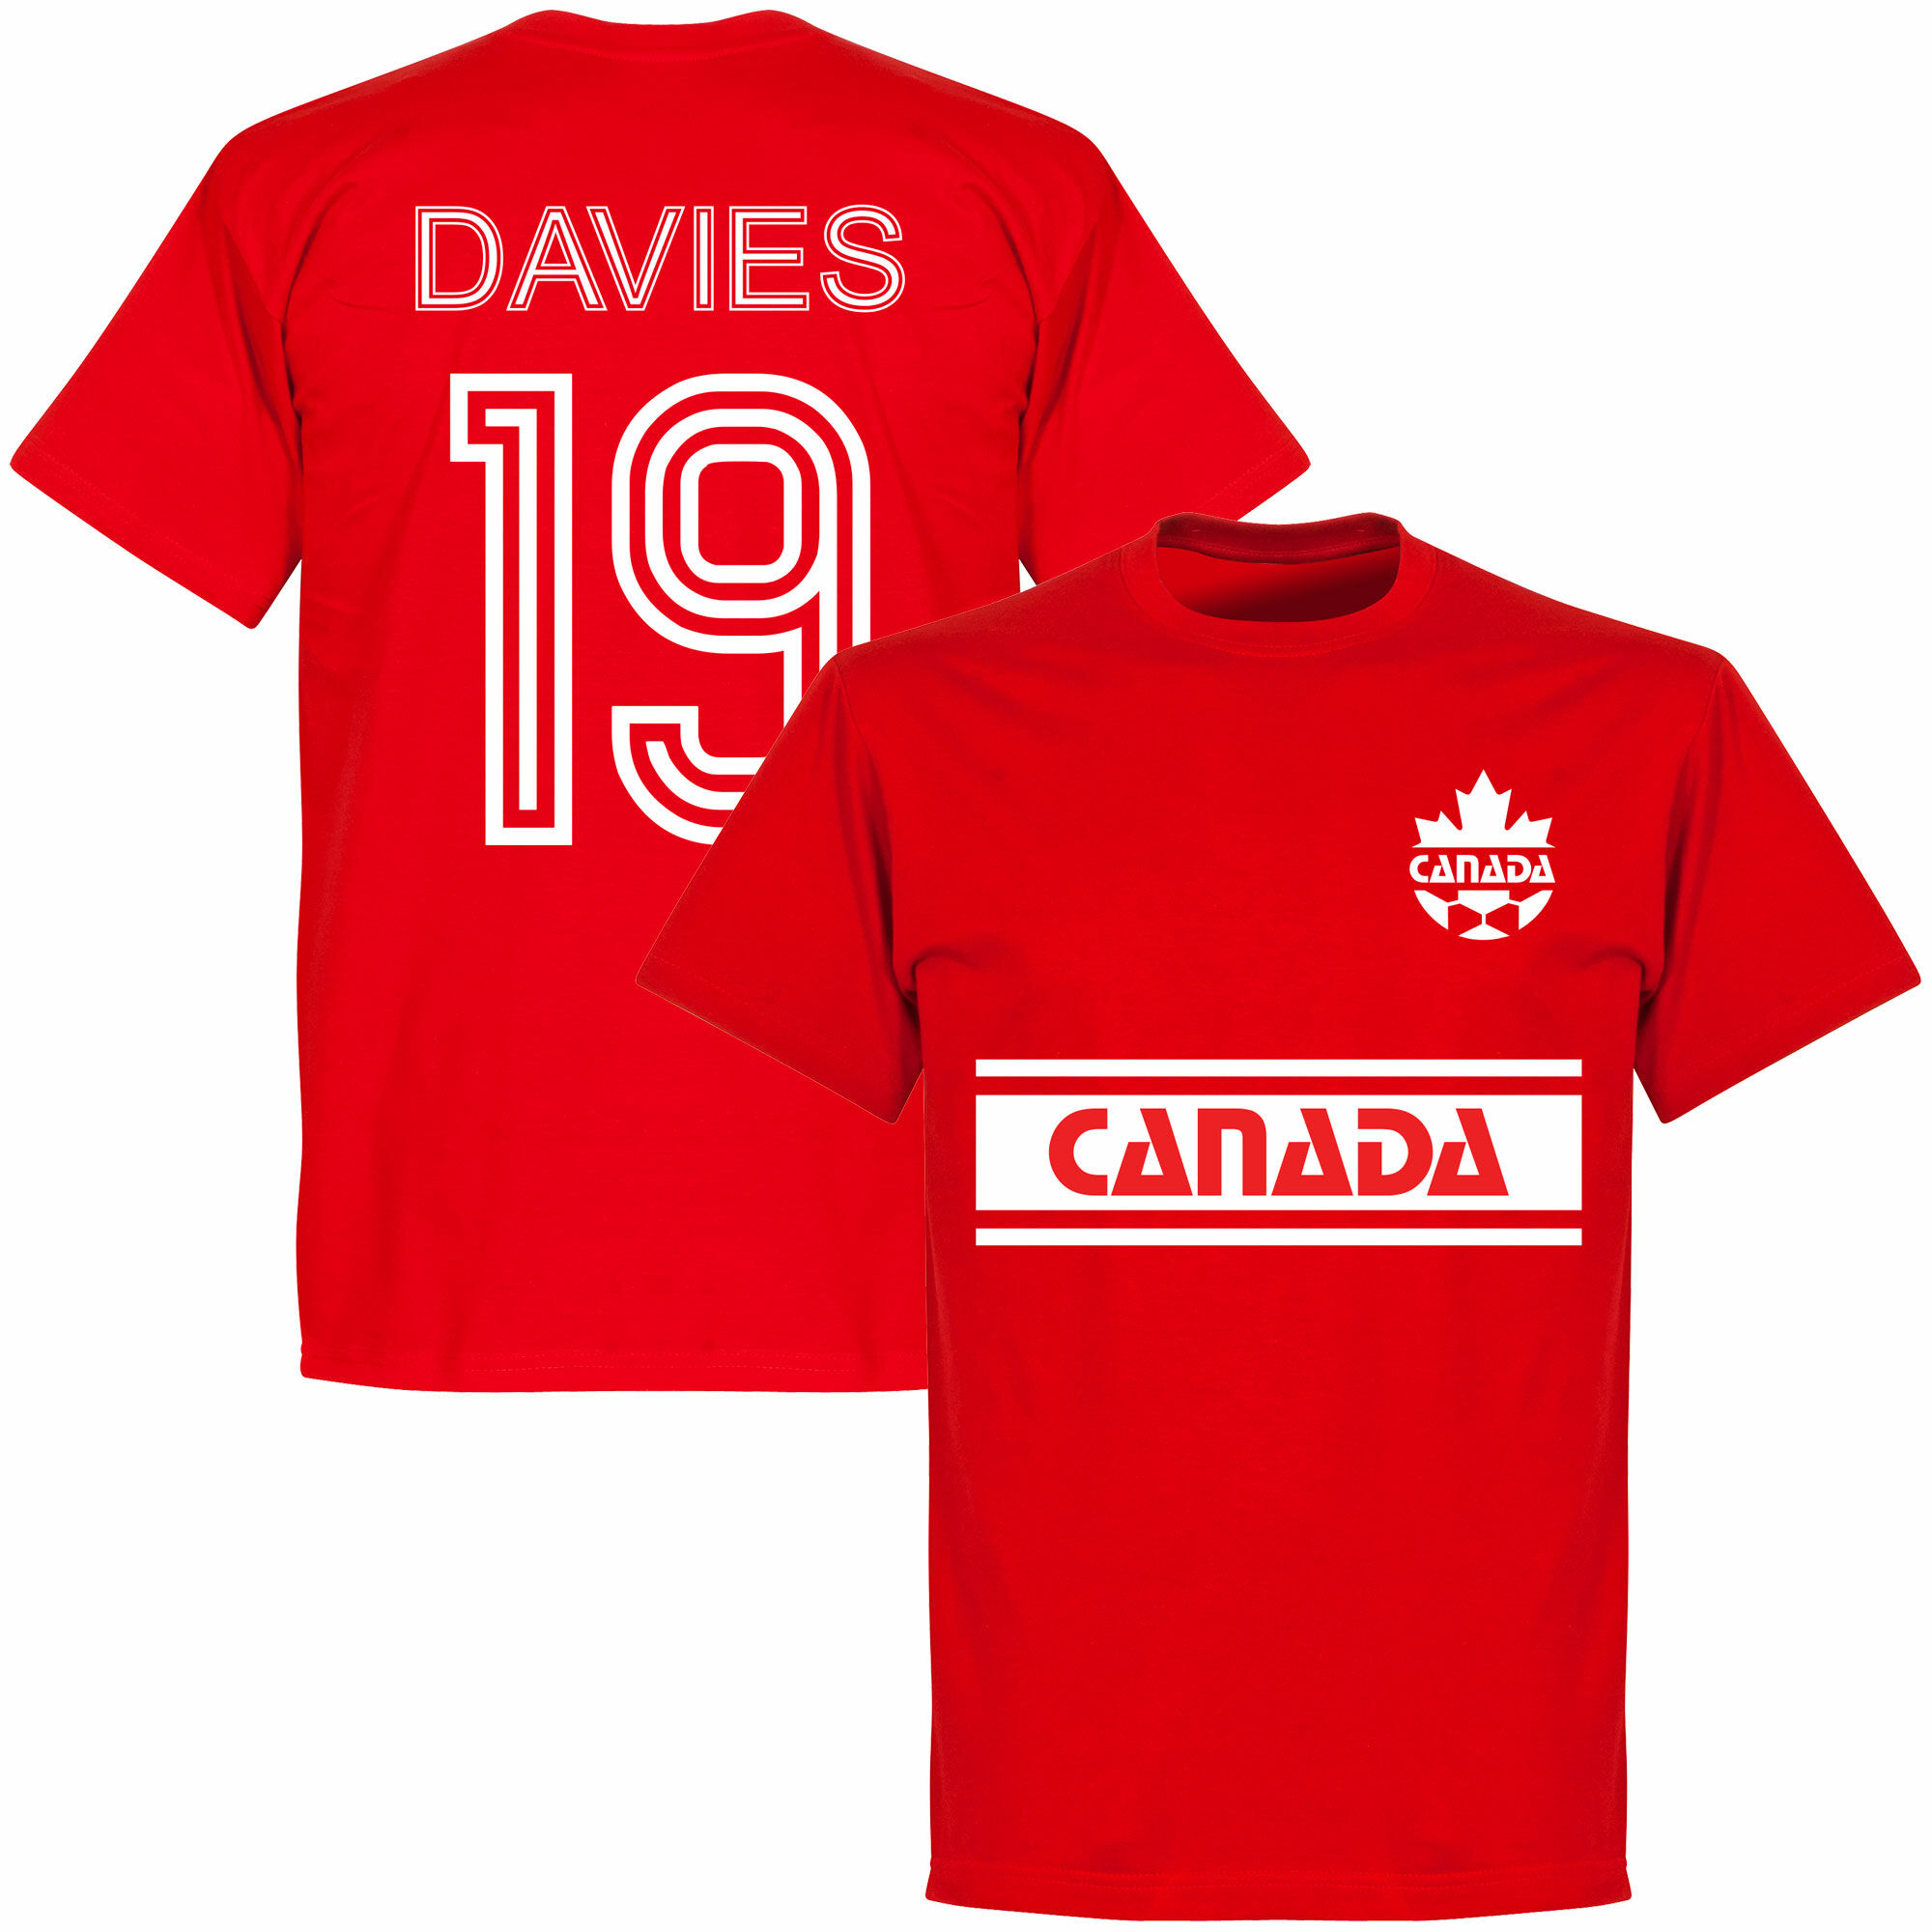 Kanada - Tričko - číslo 19, červené, Alphonso Davies, retrostyl